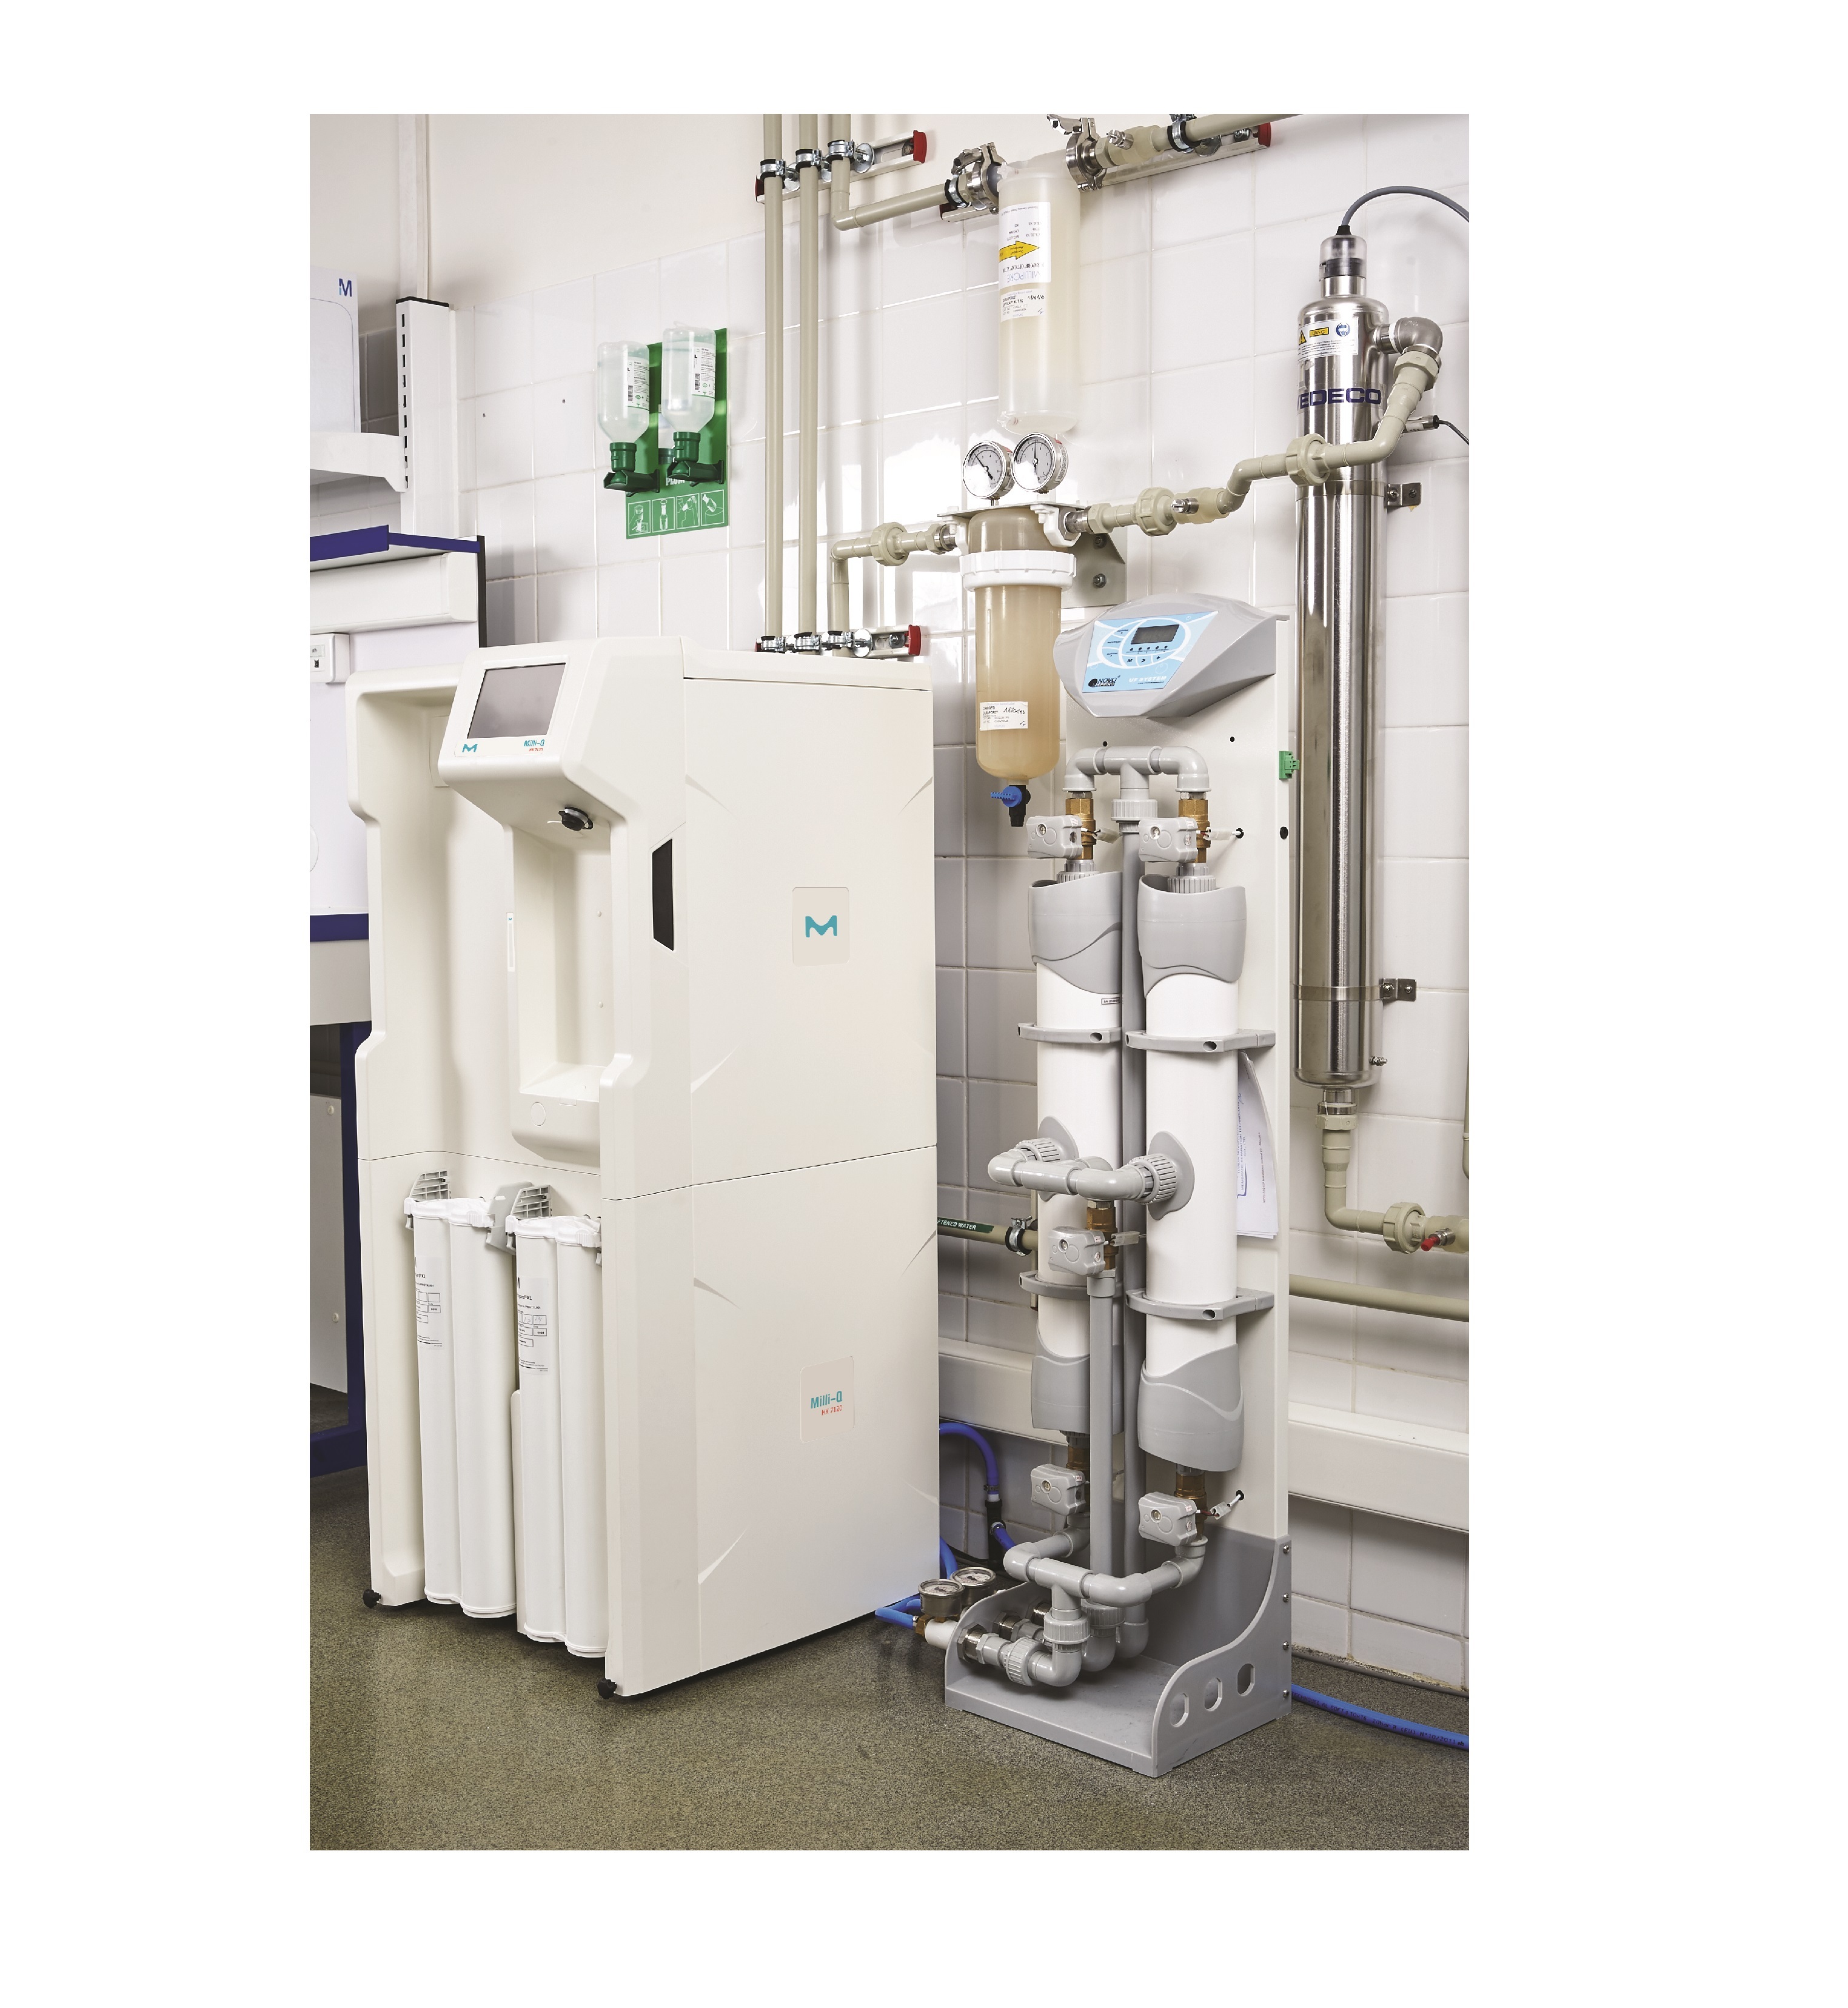 默克Milli-Q® HX7000智能整体水纯化系统-实验室超纯水系统